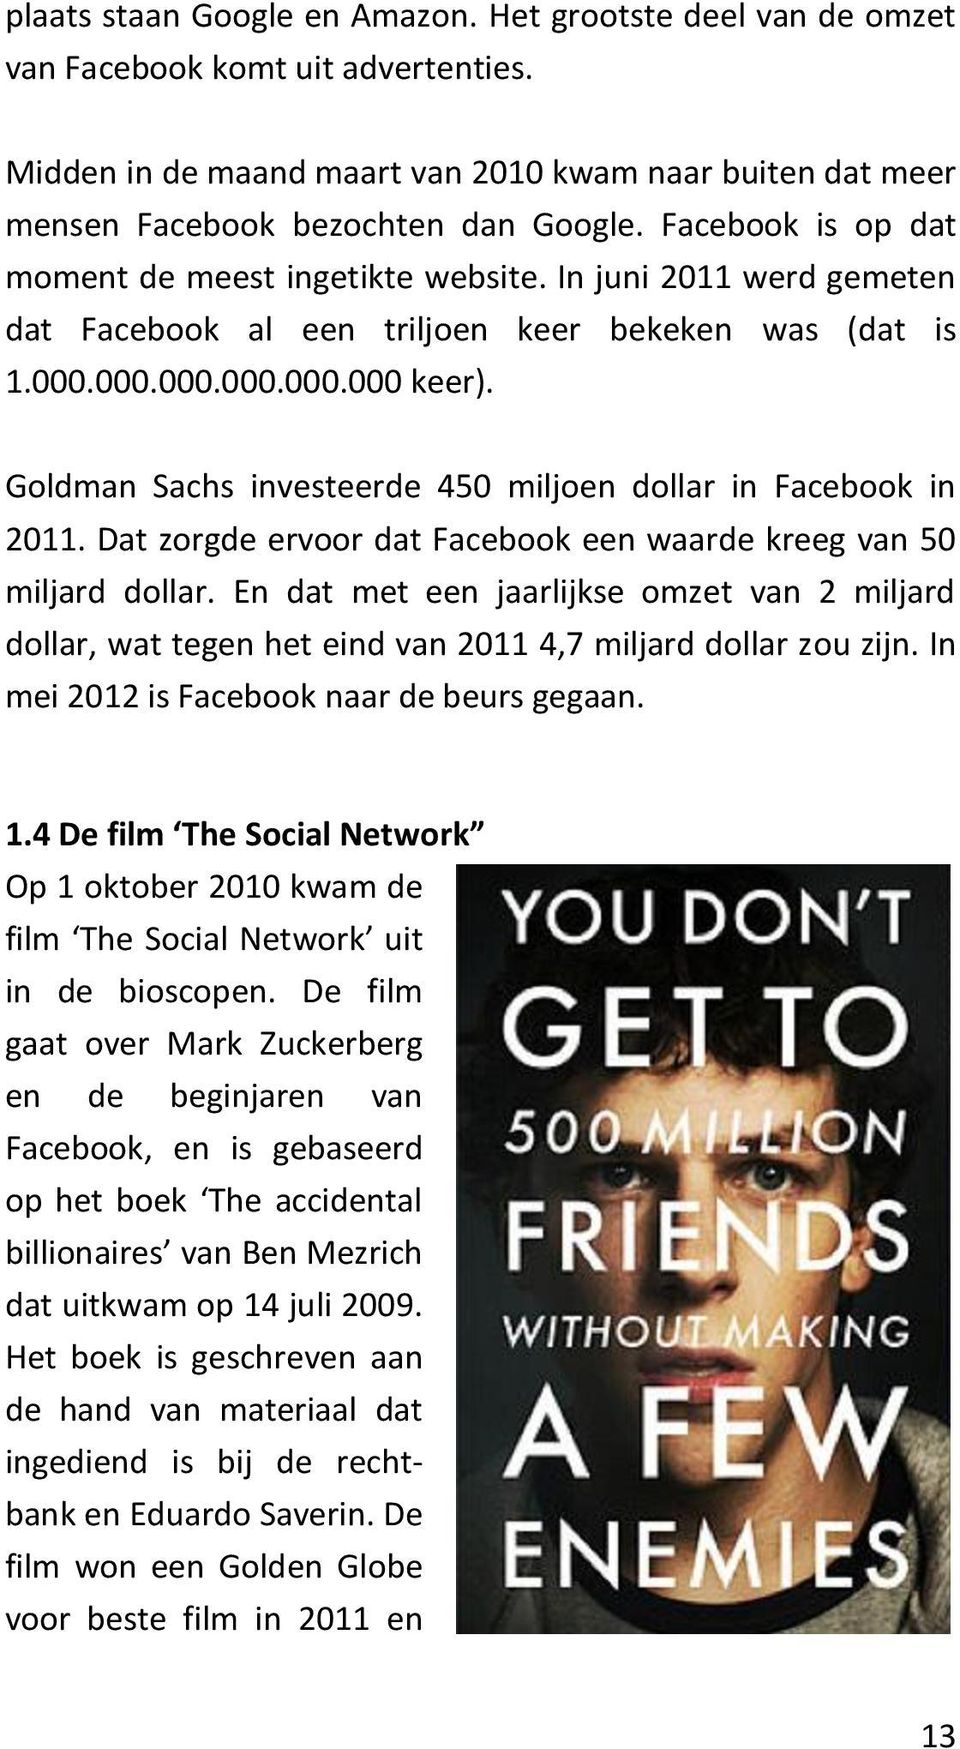 Goldman Sachs investeerde 450 miljoen dollar in Facebook in 2011. Dat zorgde ervoor dat Facebook een waarde kreeg van 50 miljard dollar.